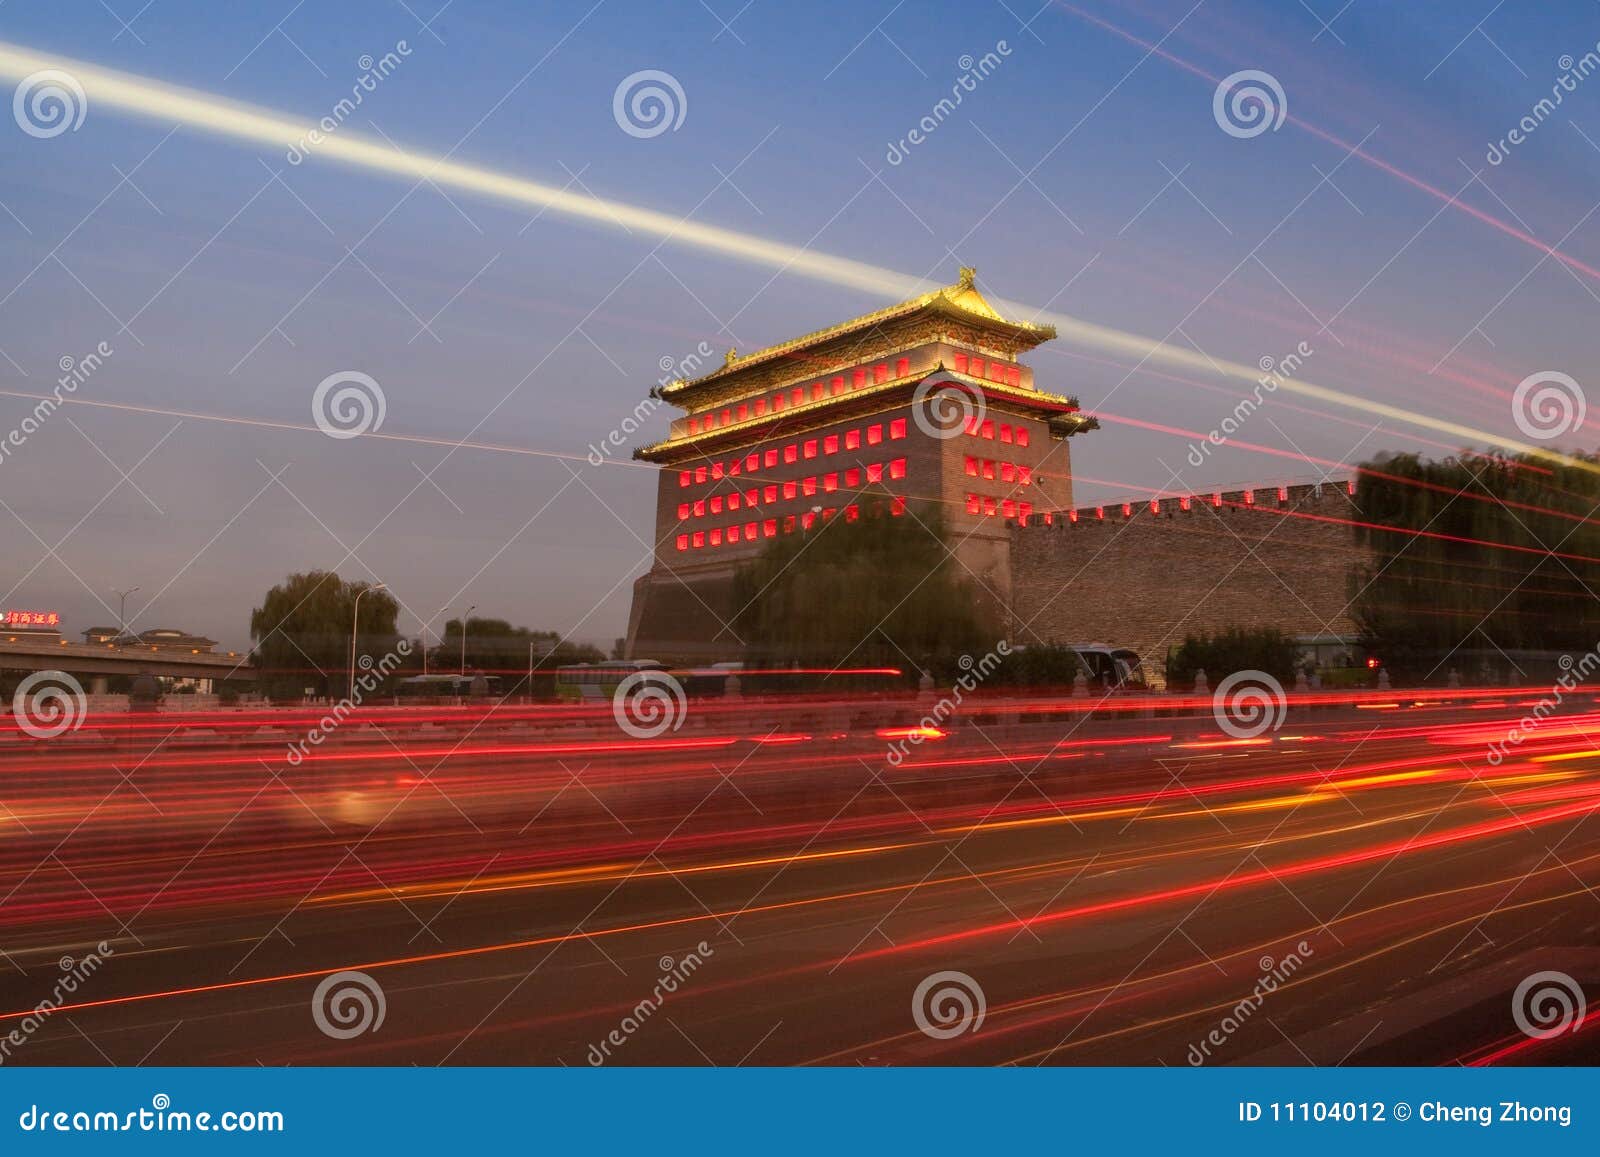 watchtower of desheng gate in beijing at night